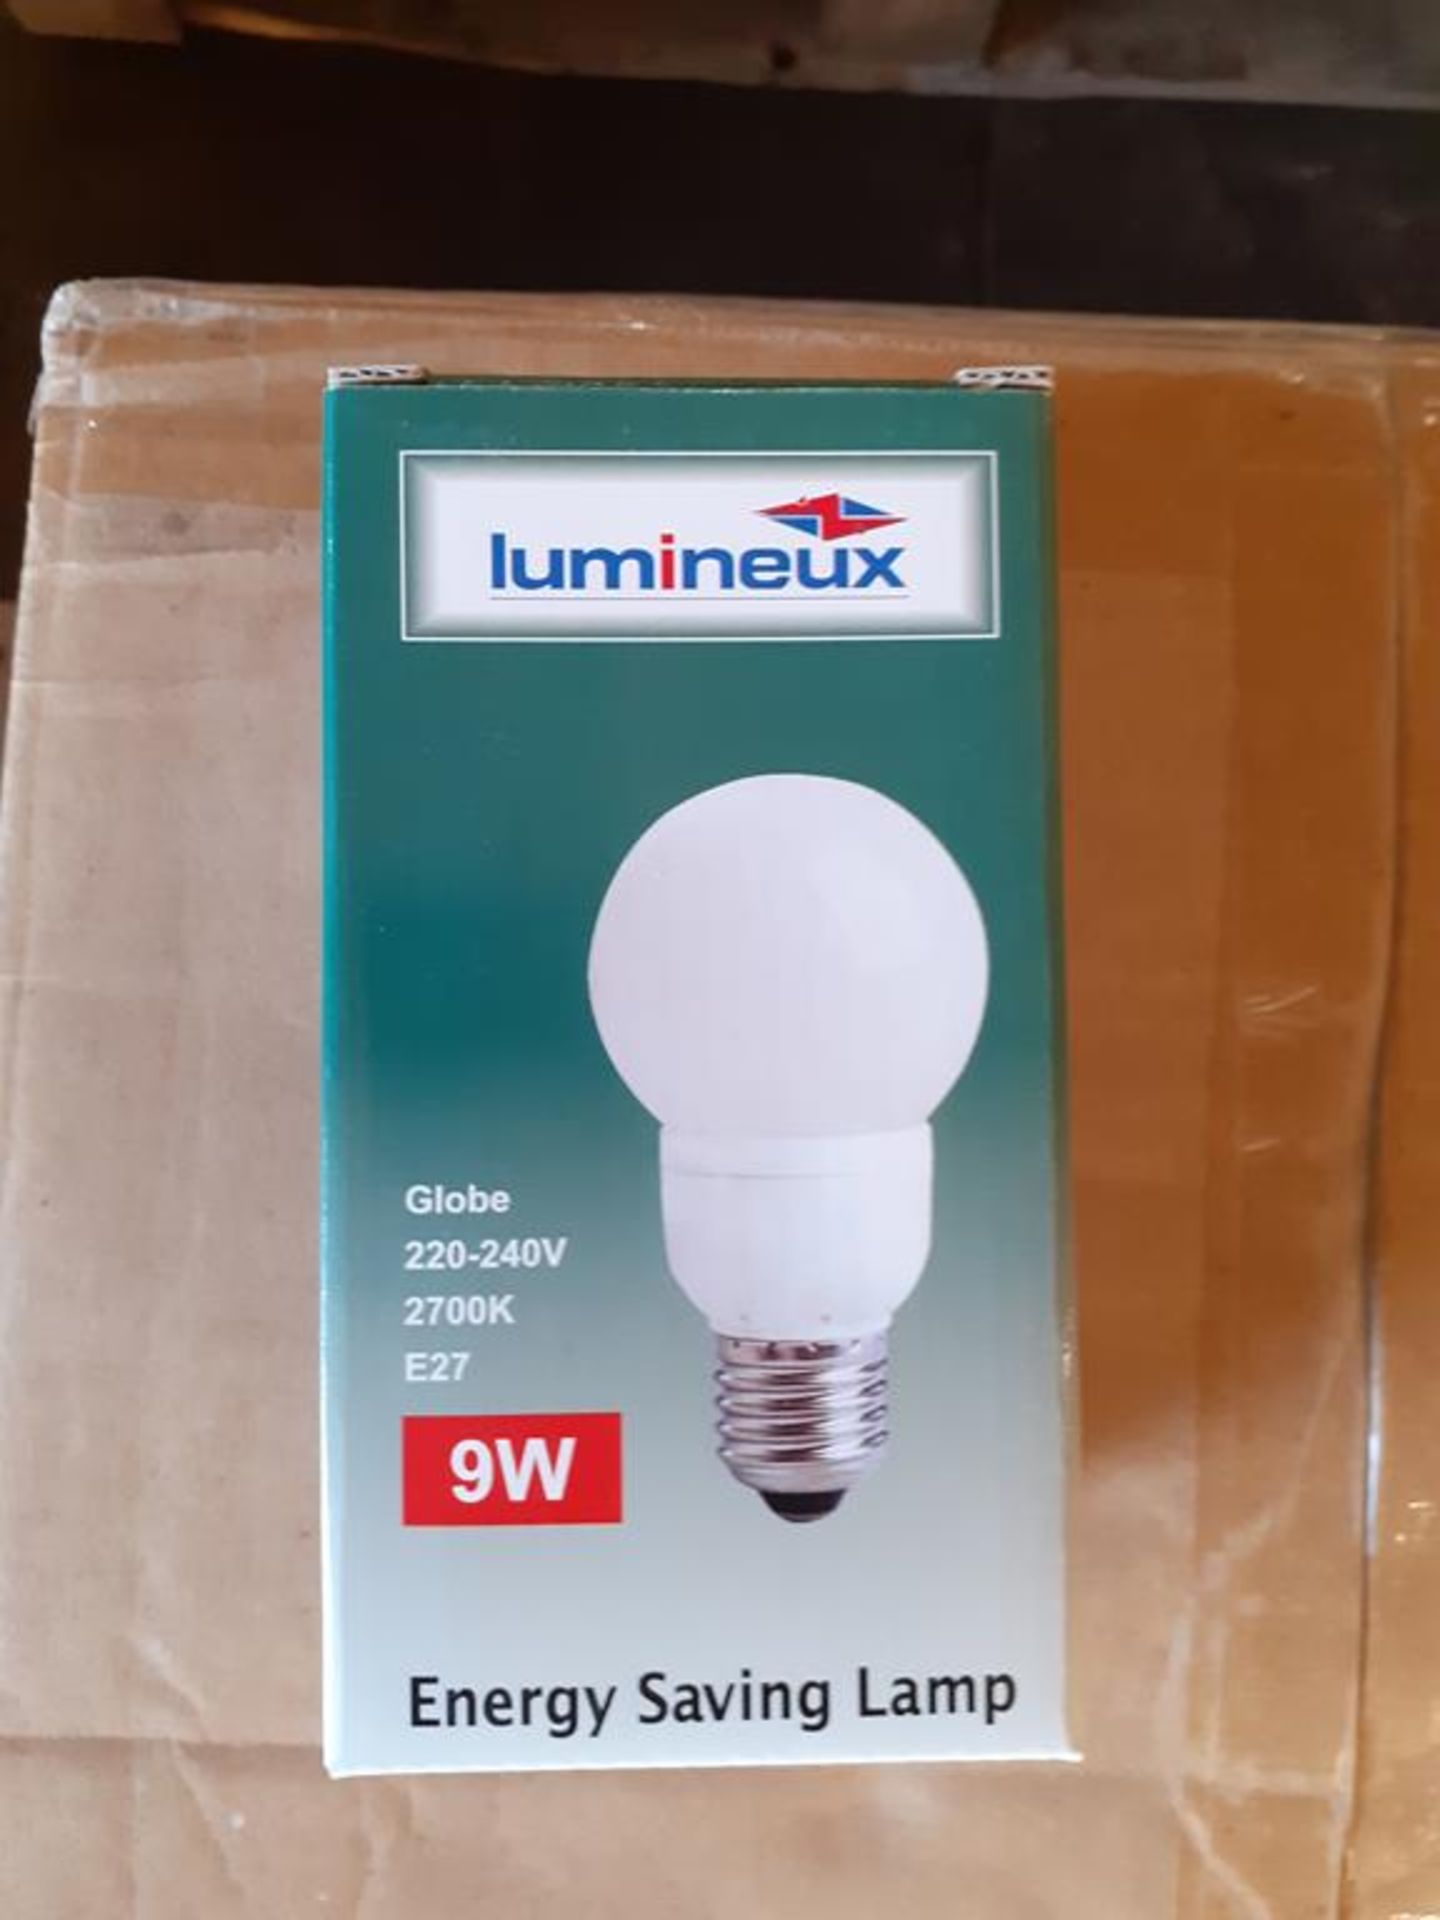 5x boxes of Lumineux Globe 9W E27 2700K 220-240V Engery Saving Bulbs (50pcs per box) - Image 3 of 4